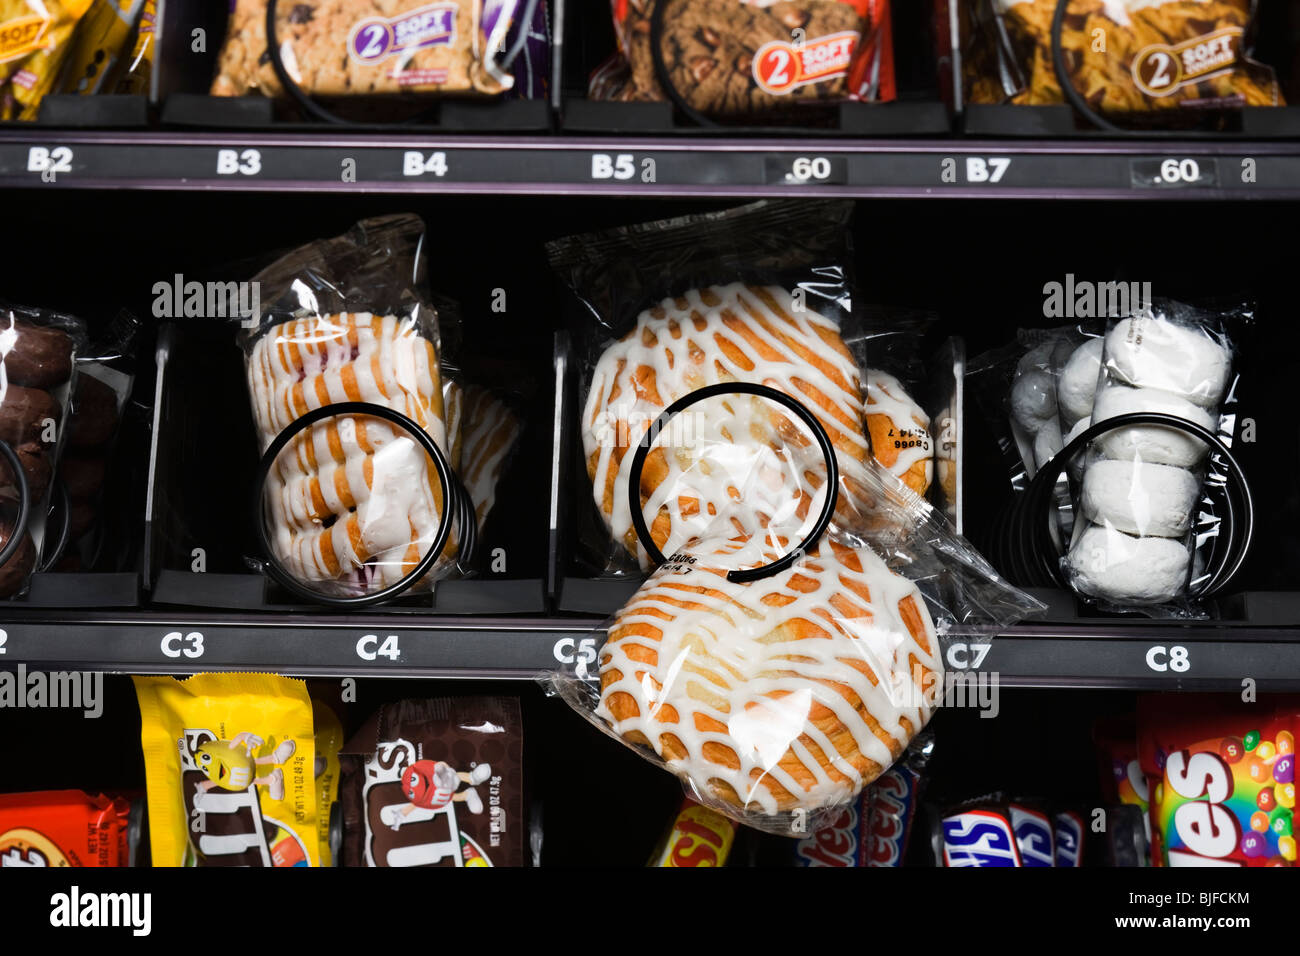 Danish appesa in un distributore automatico Foto Stock